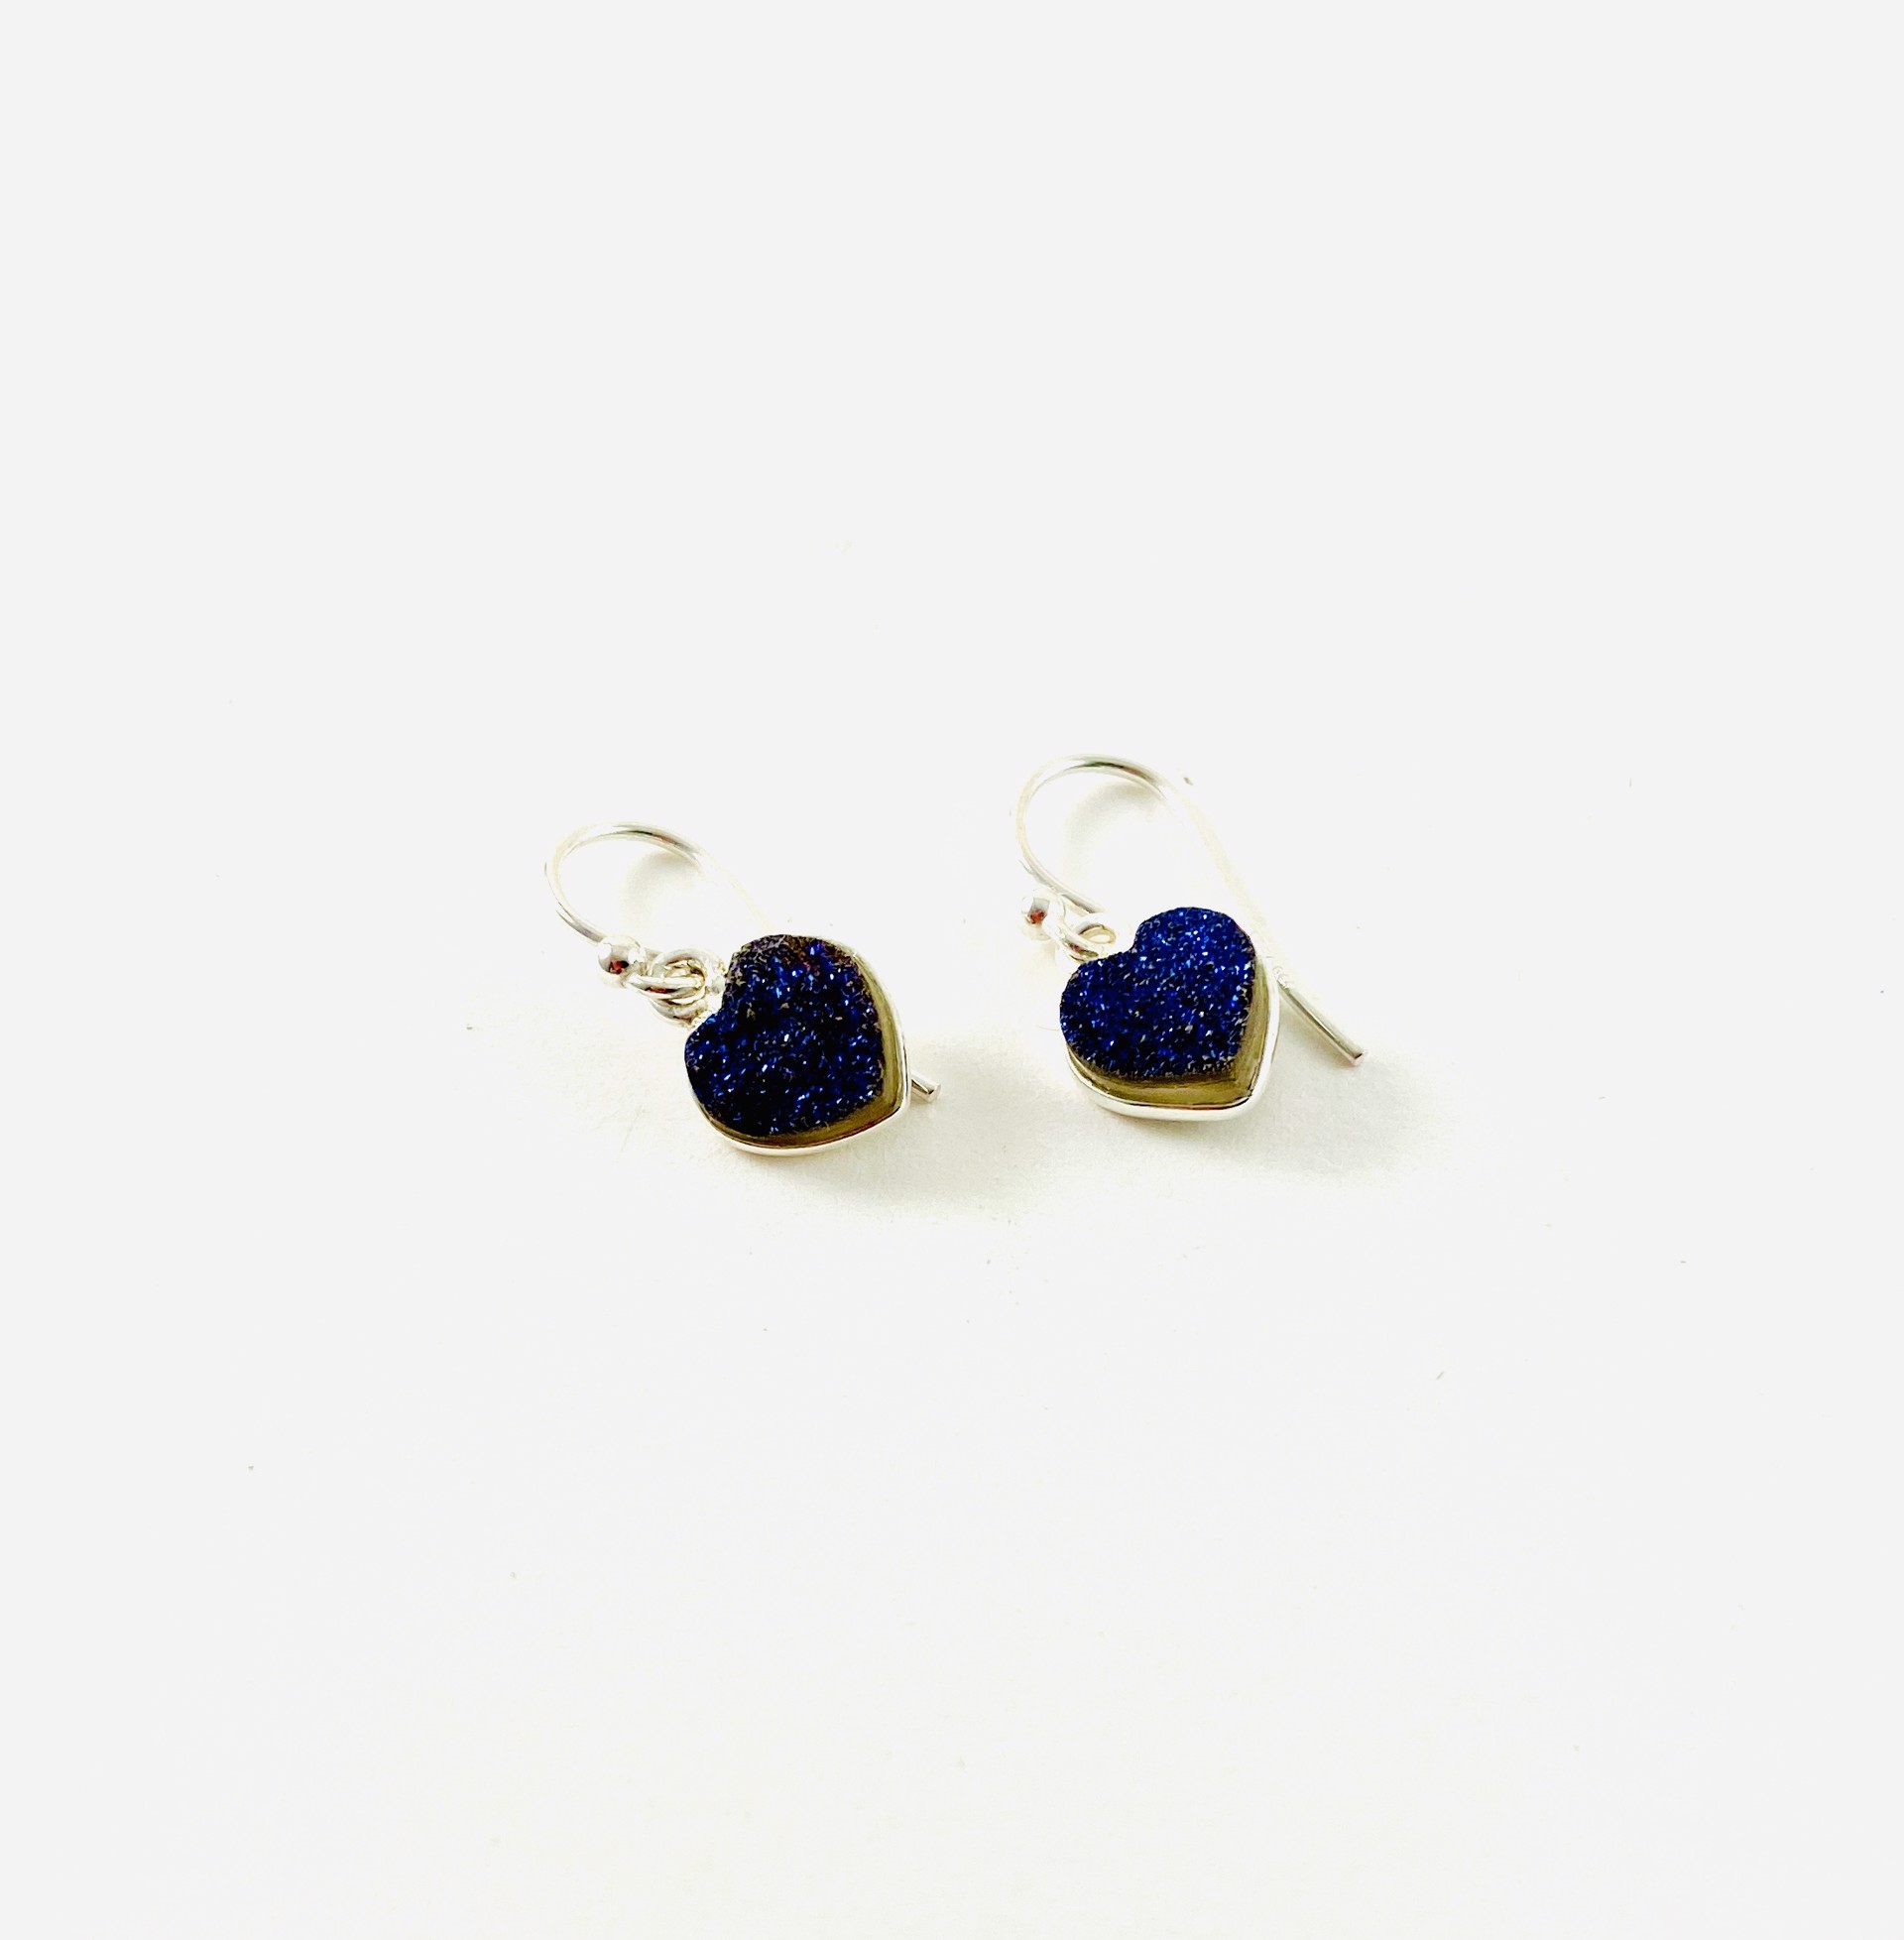 Blue Druzy Heart Earrings by Nance Trueworthy